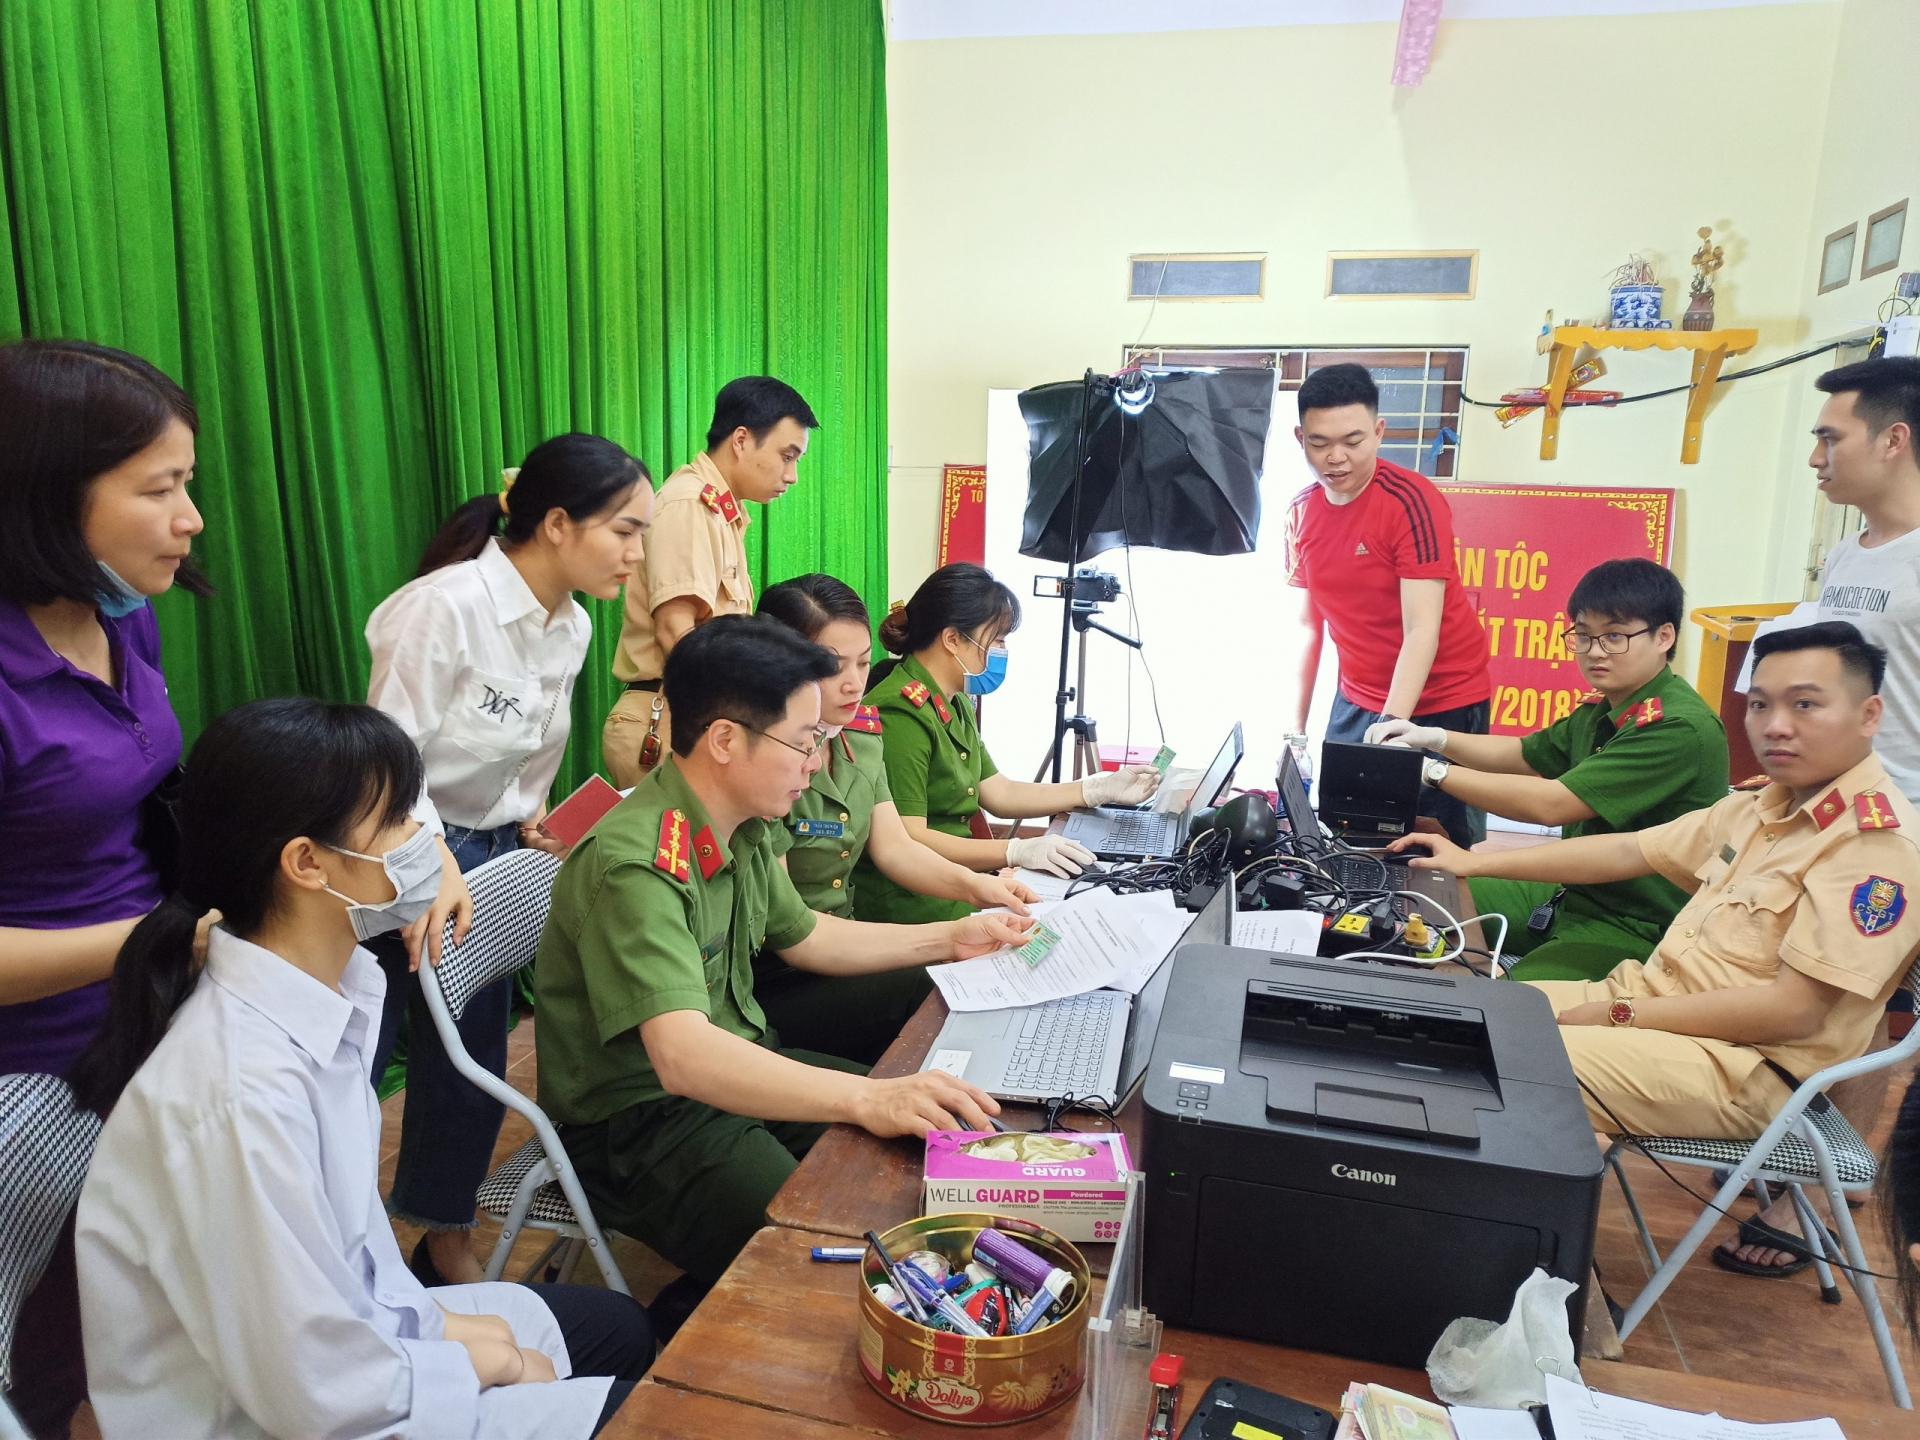 Công an thành phố Hà Giang làm thủ tục cấp thẻ CCCD gắn chíp điện tử cho người dân

